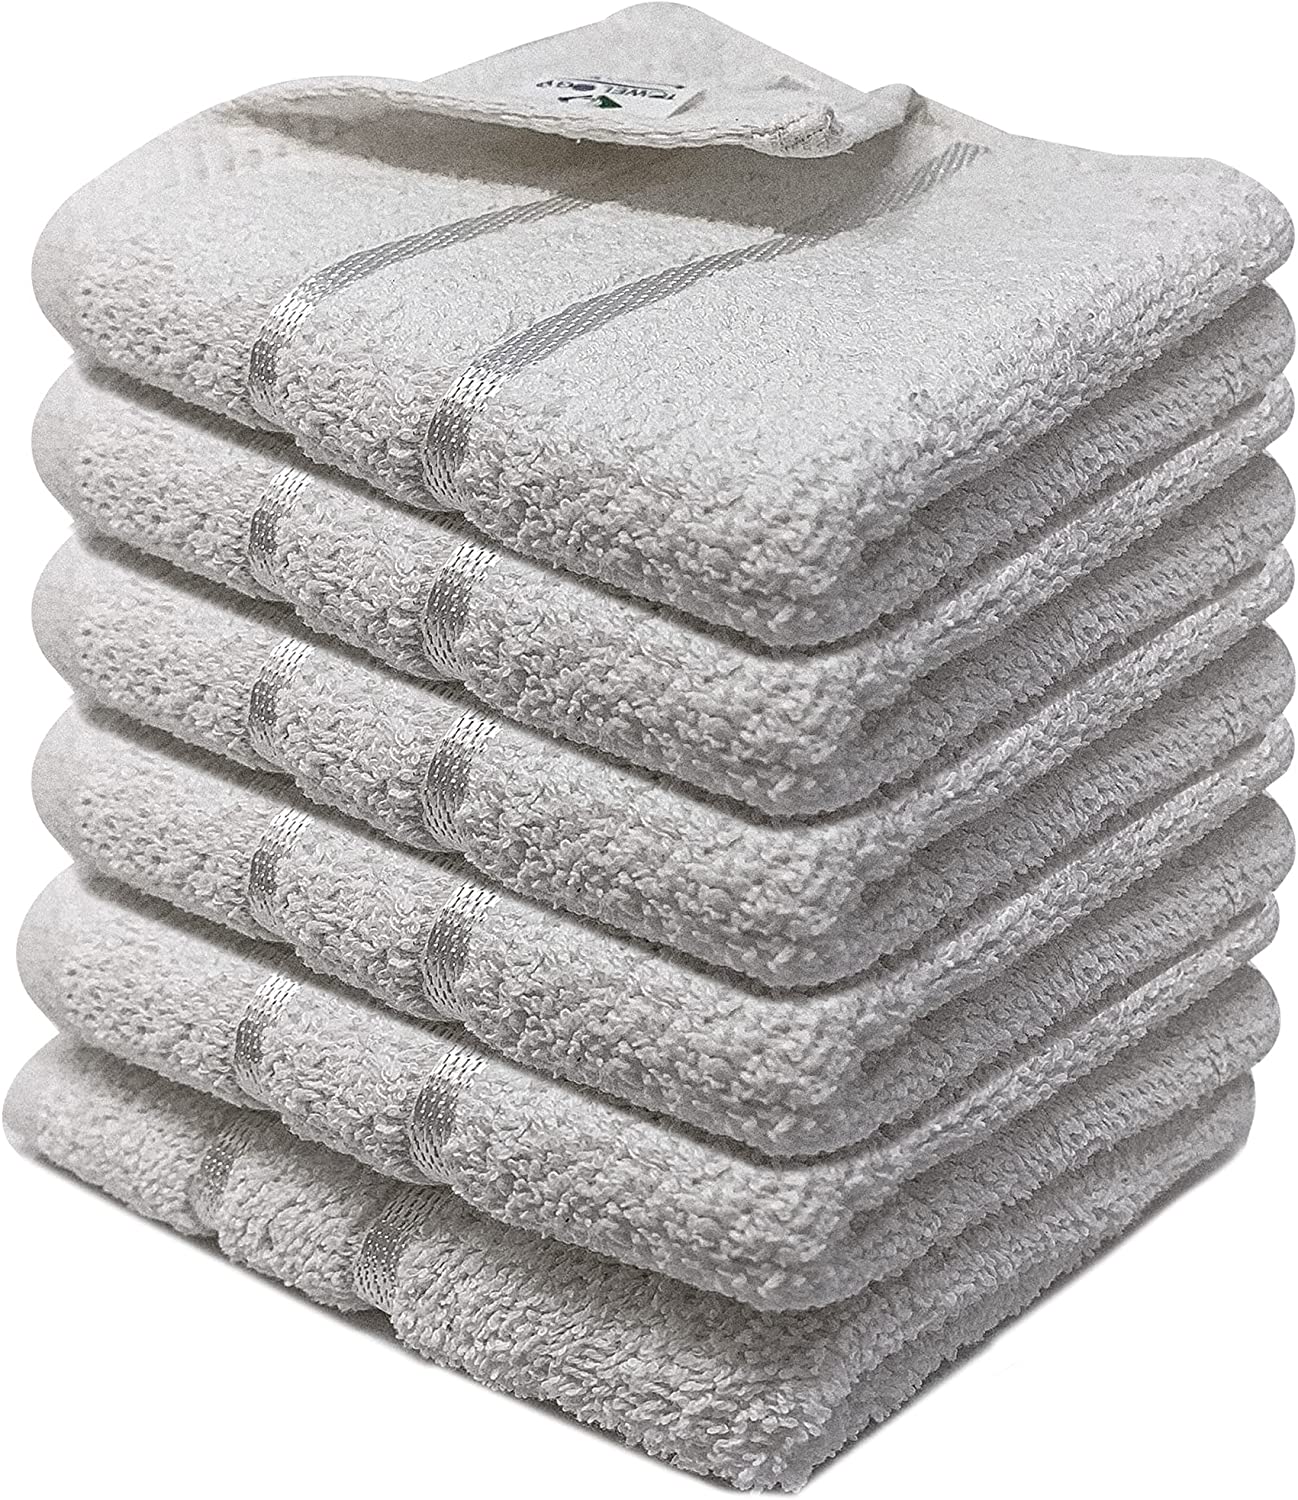 Naomi-650GSM-Large-Face-Towels